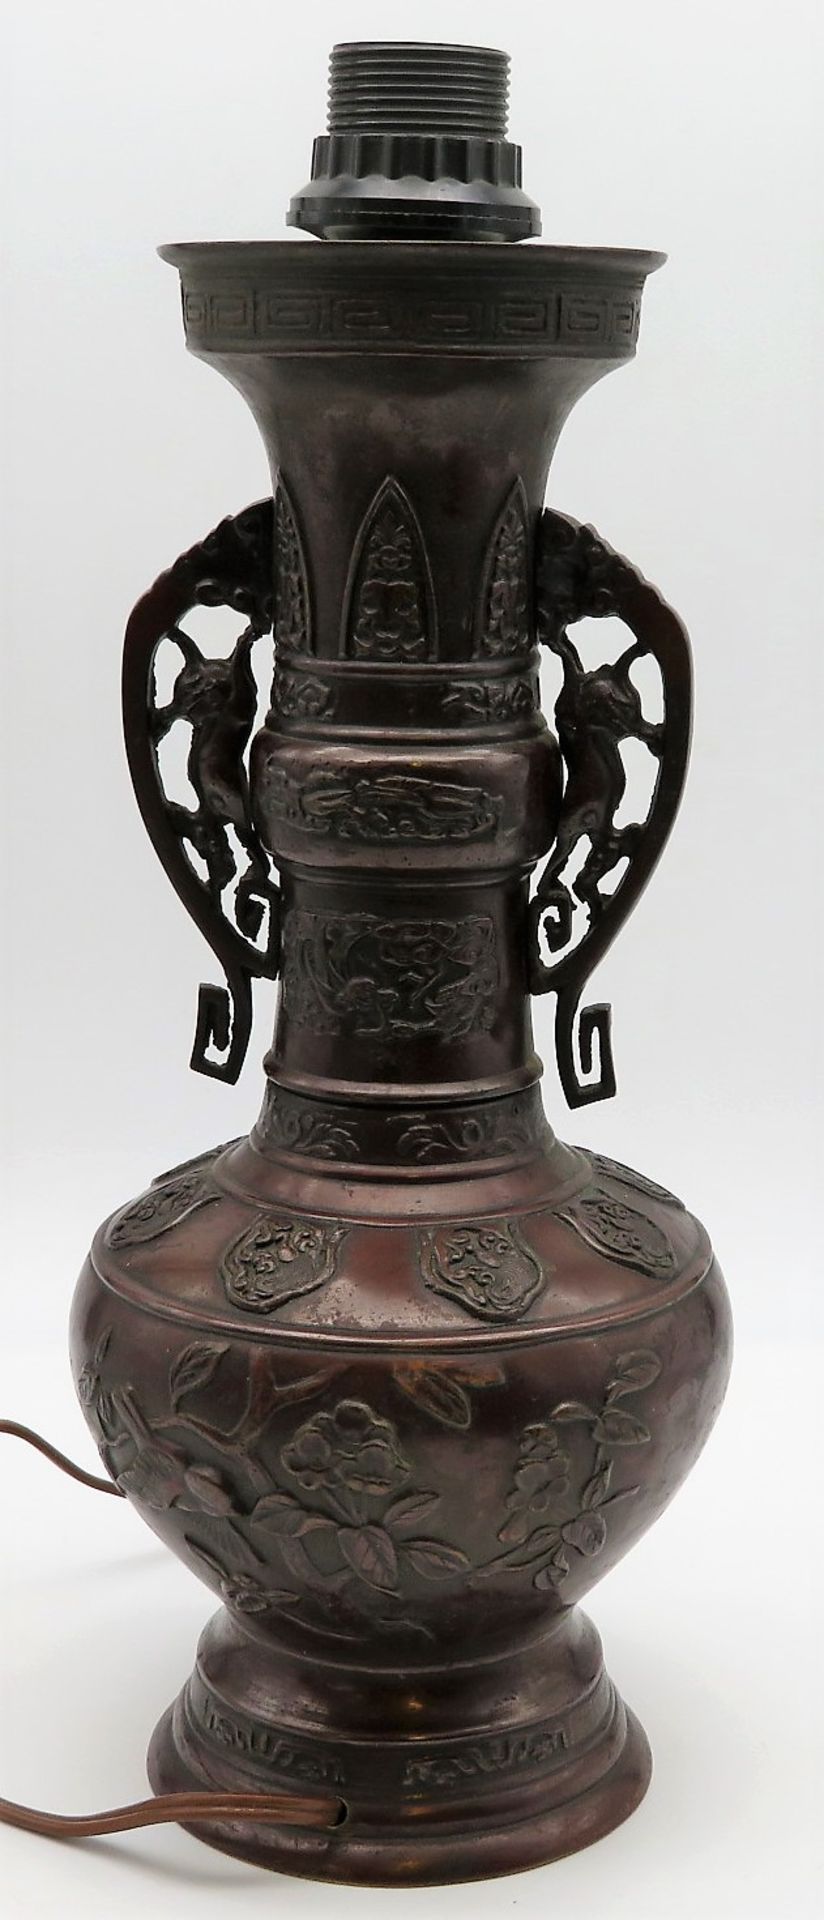 Vase mit 2 seitlichen Handhaben, Japan, Meiji Periode, 1868 - 1912, Bronze mit reichem Reliefdekor, - Image 2 of 2